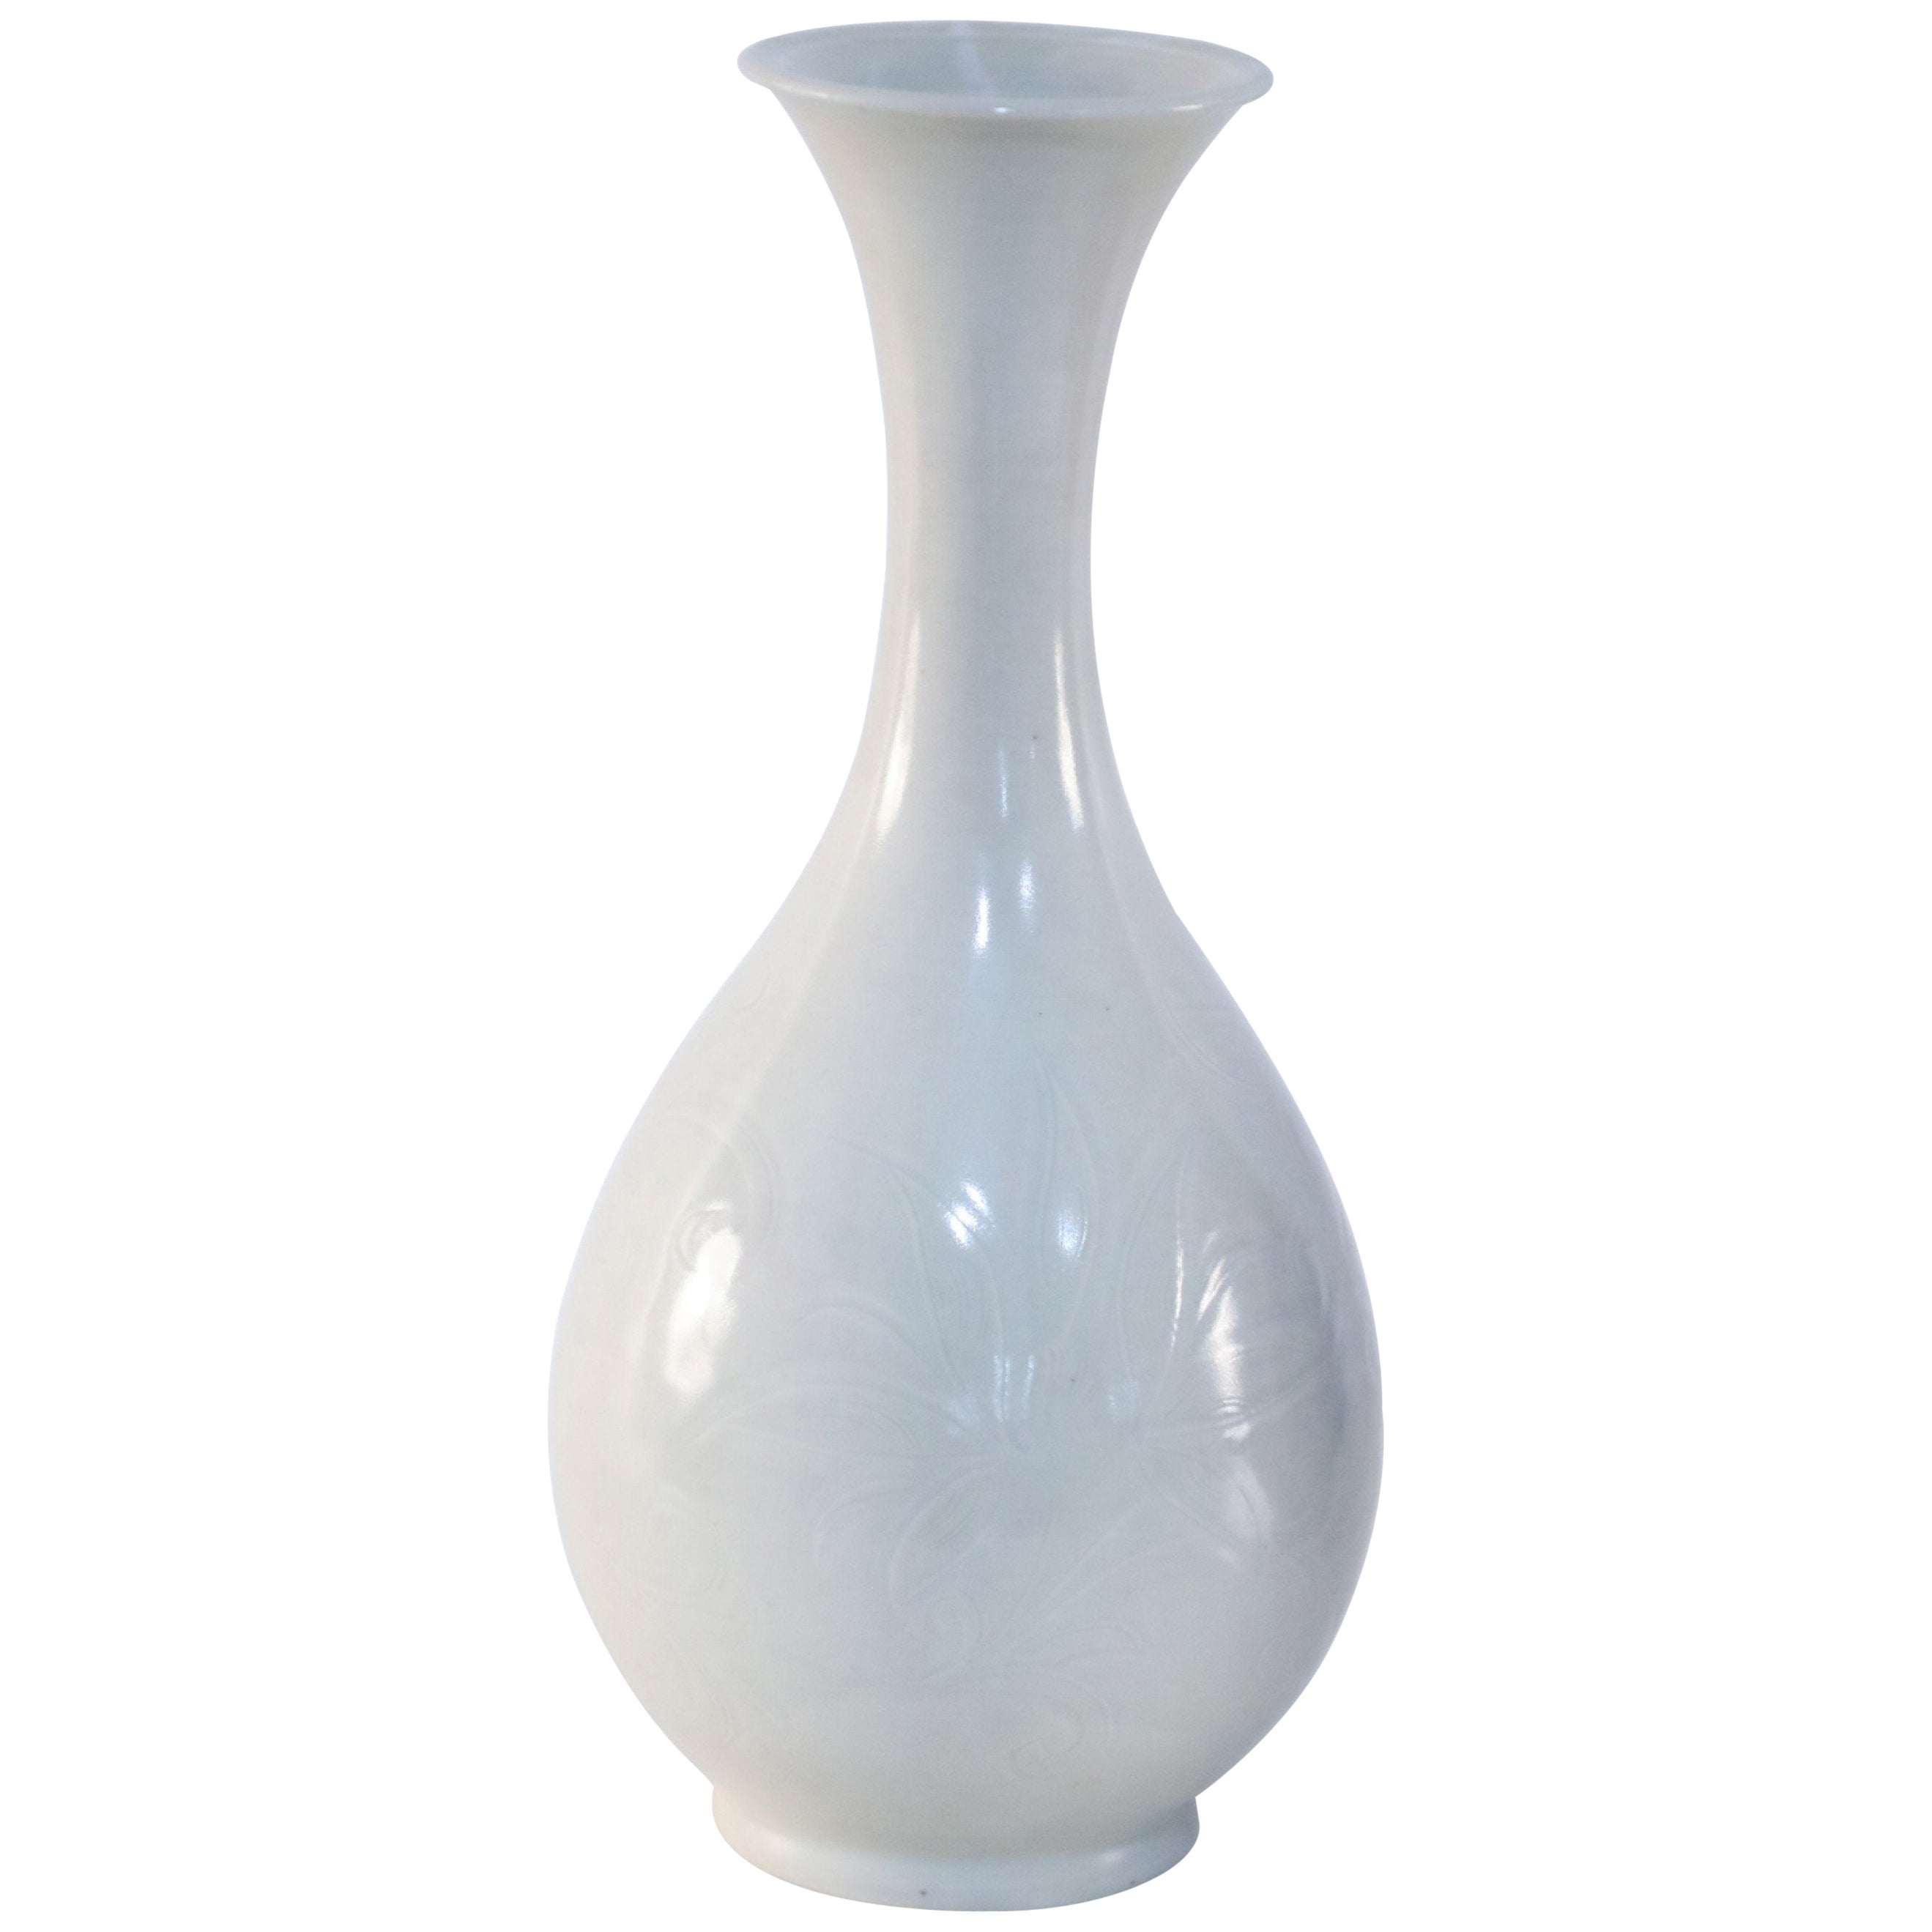 Vase chinois en porcelaine à motifs blanc cassé et ton sur ton